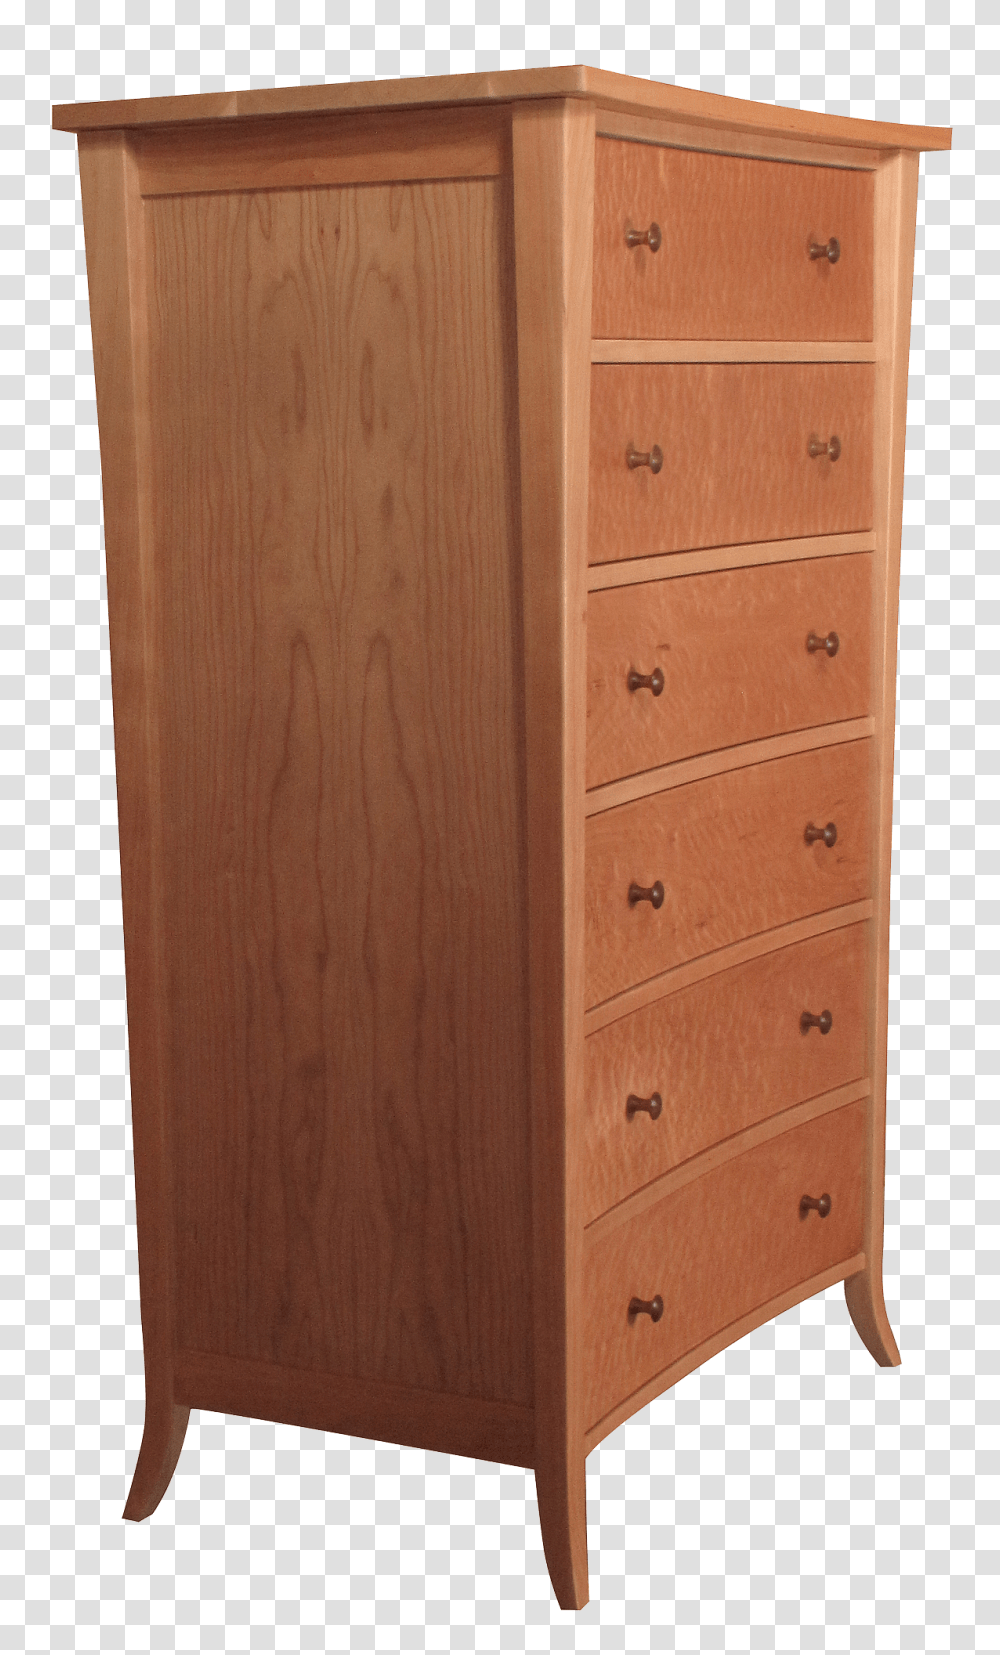 Dresser, Furniture, Drawer, Cabinet, Rug Transparent Png